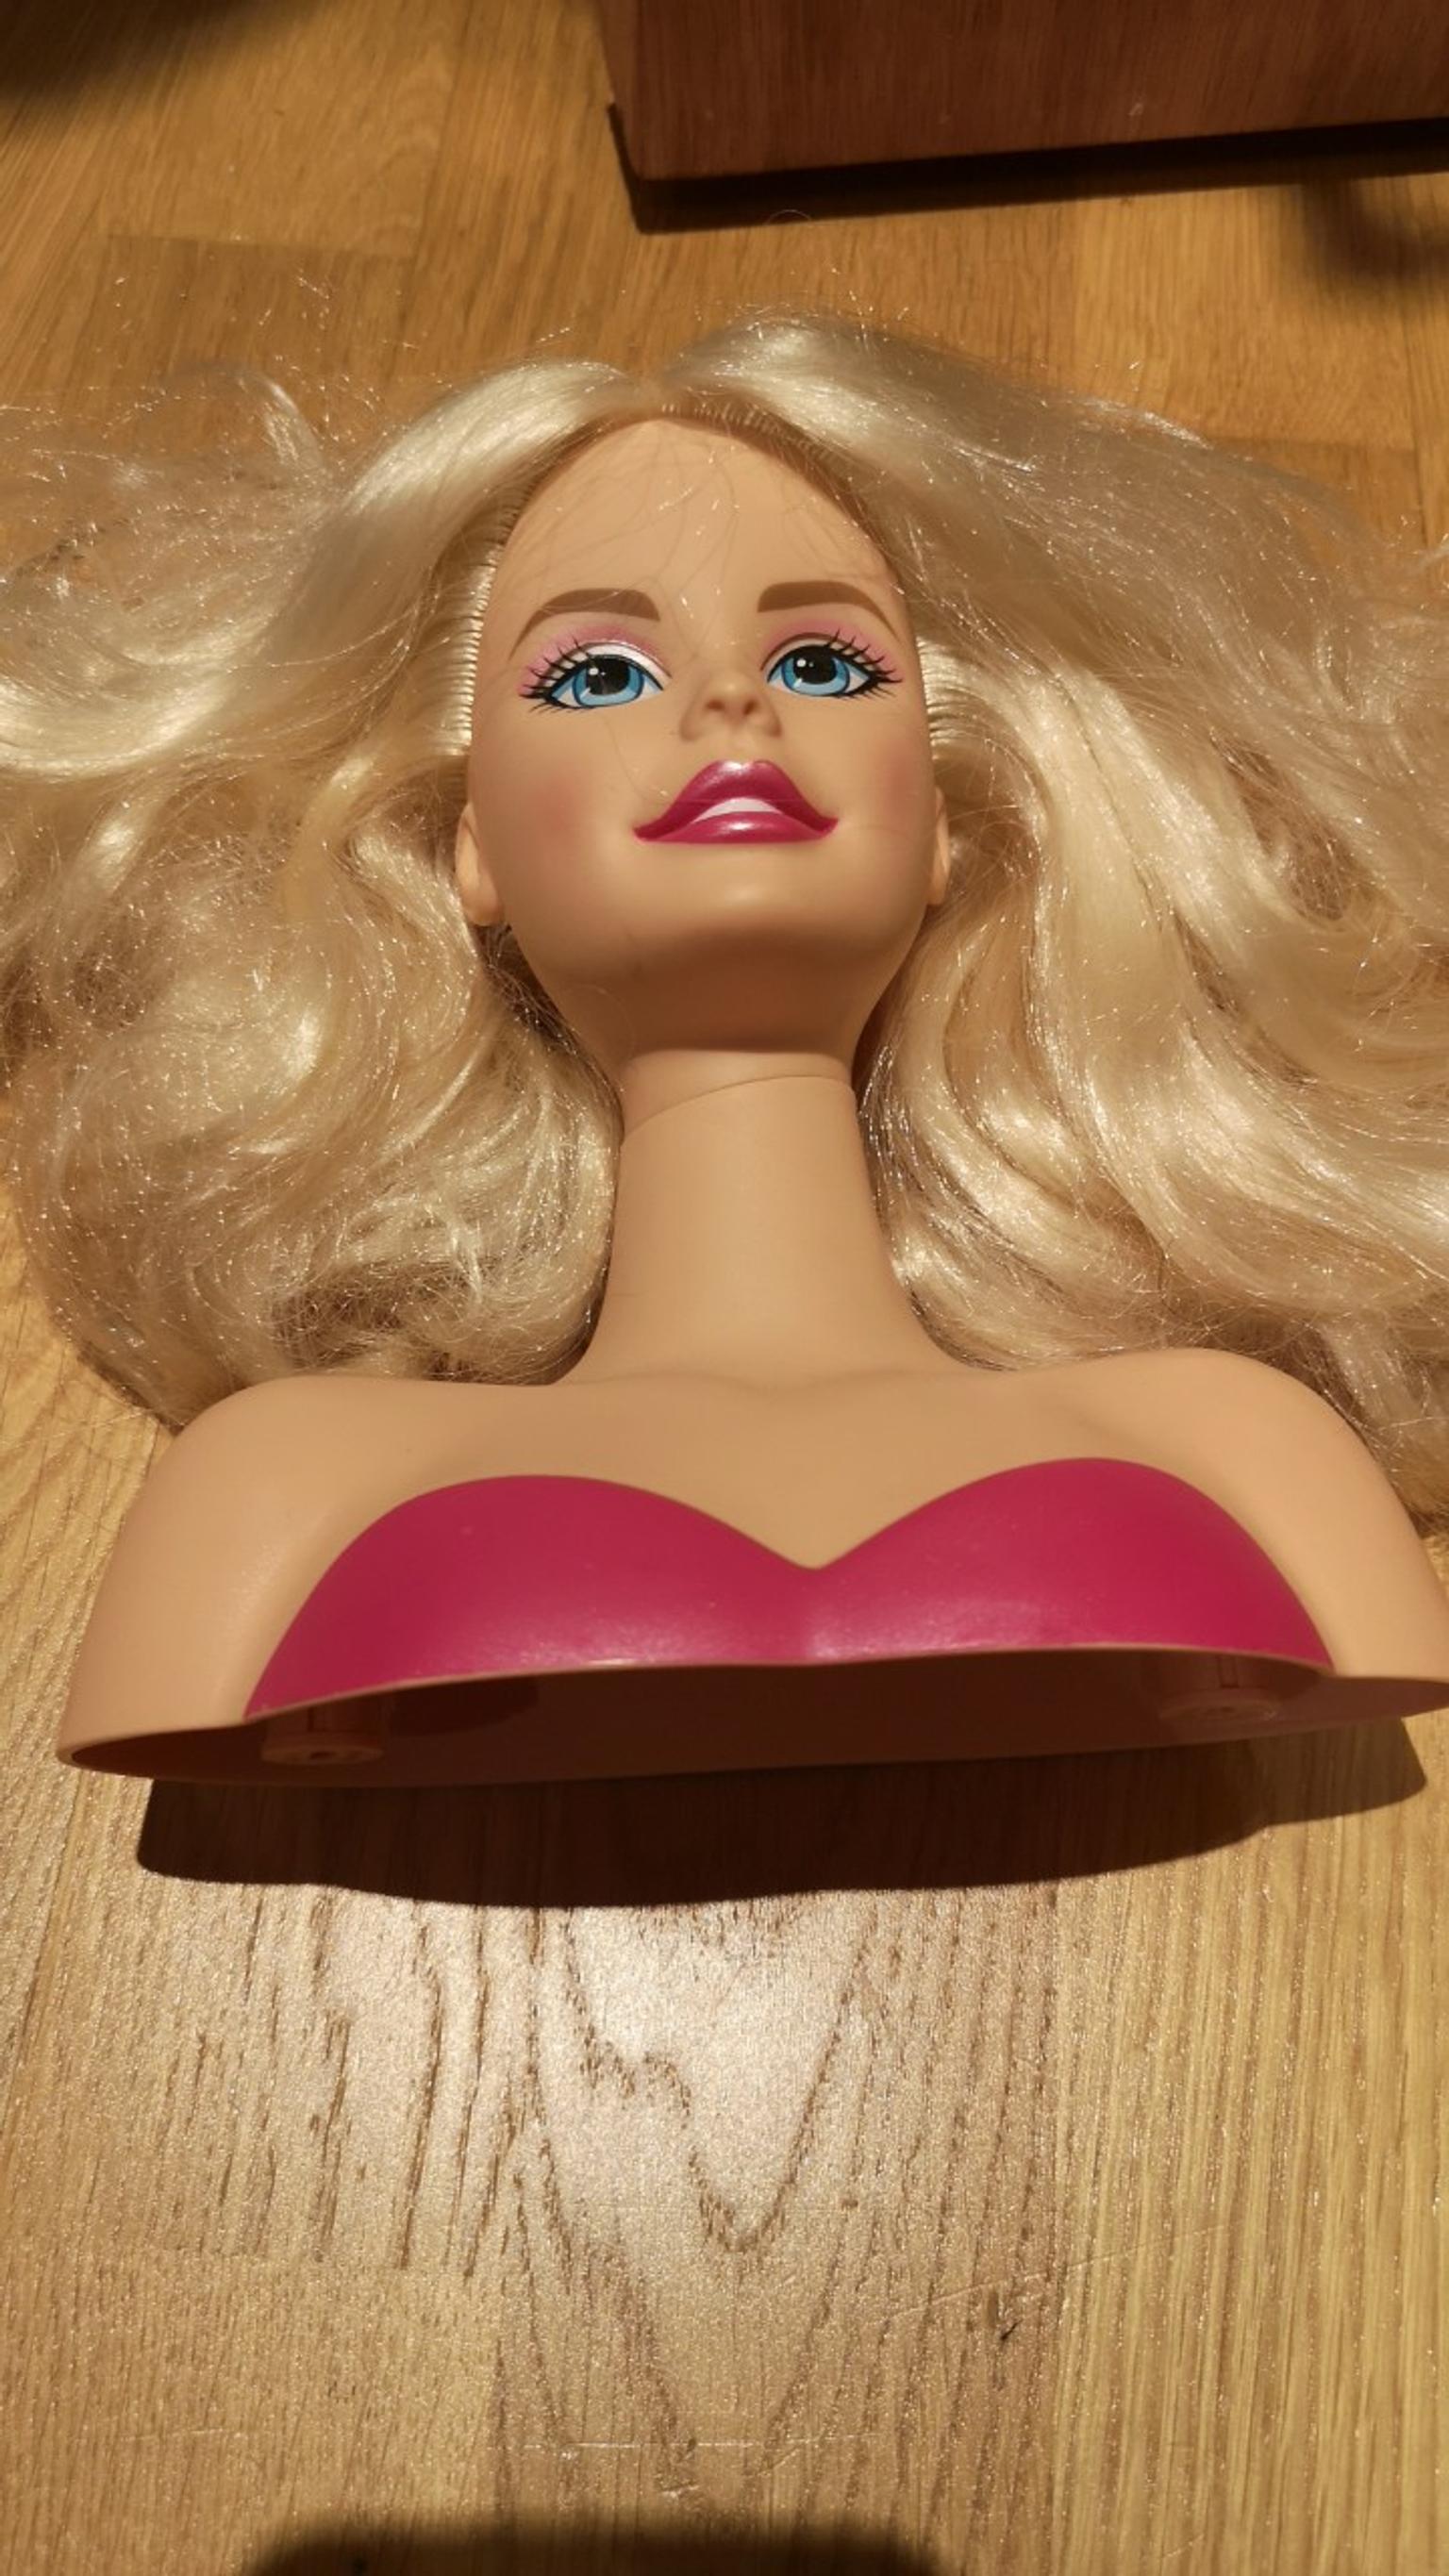 Mattel Barbie hair styling head in E15 